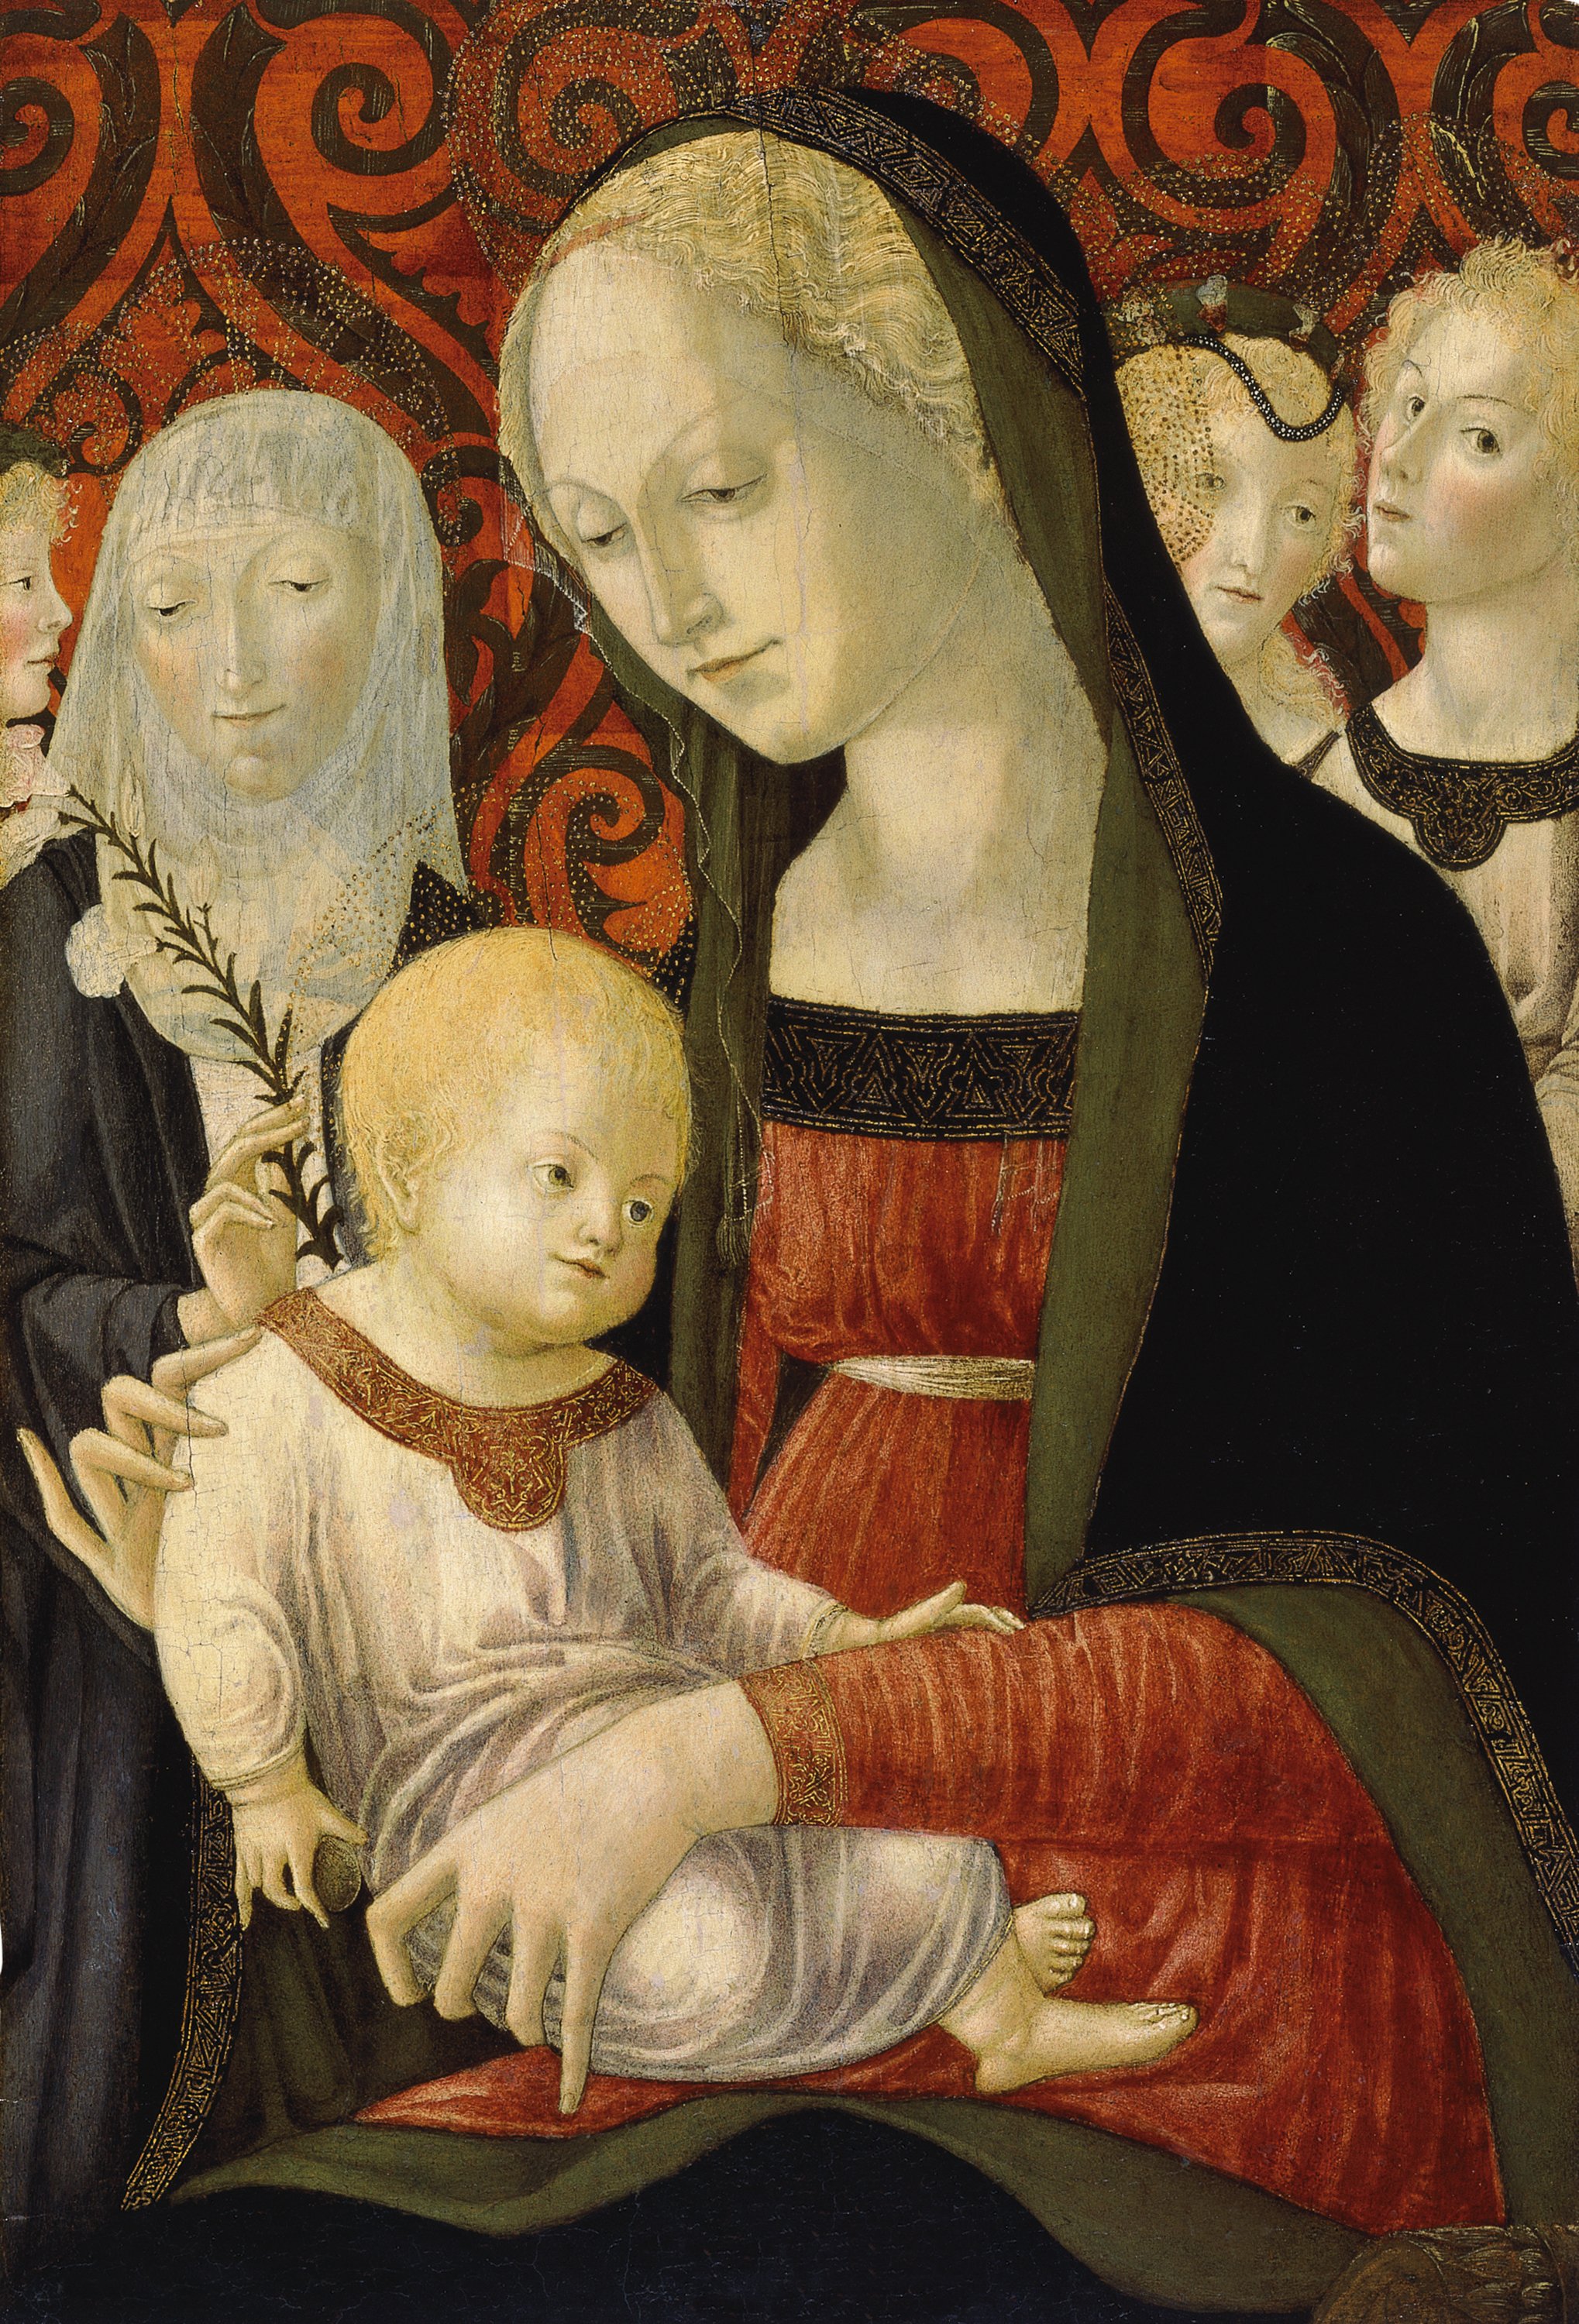 The virgin and the Child with Saint Catherine of Siena and Angels. La Virgen y el Niño con santa Catalina de Siena y ángeles, c. 1490